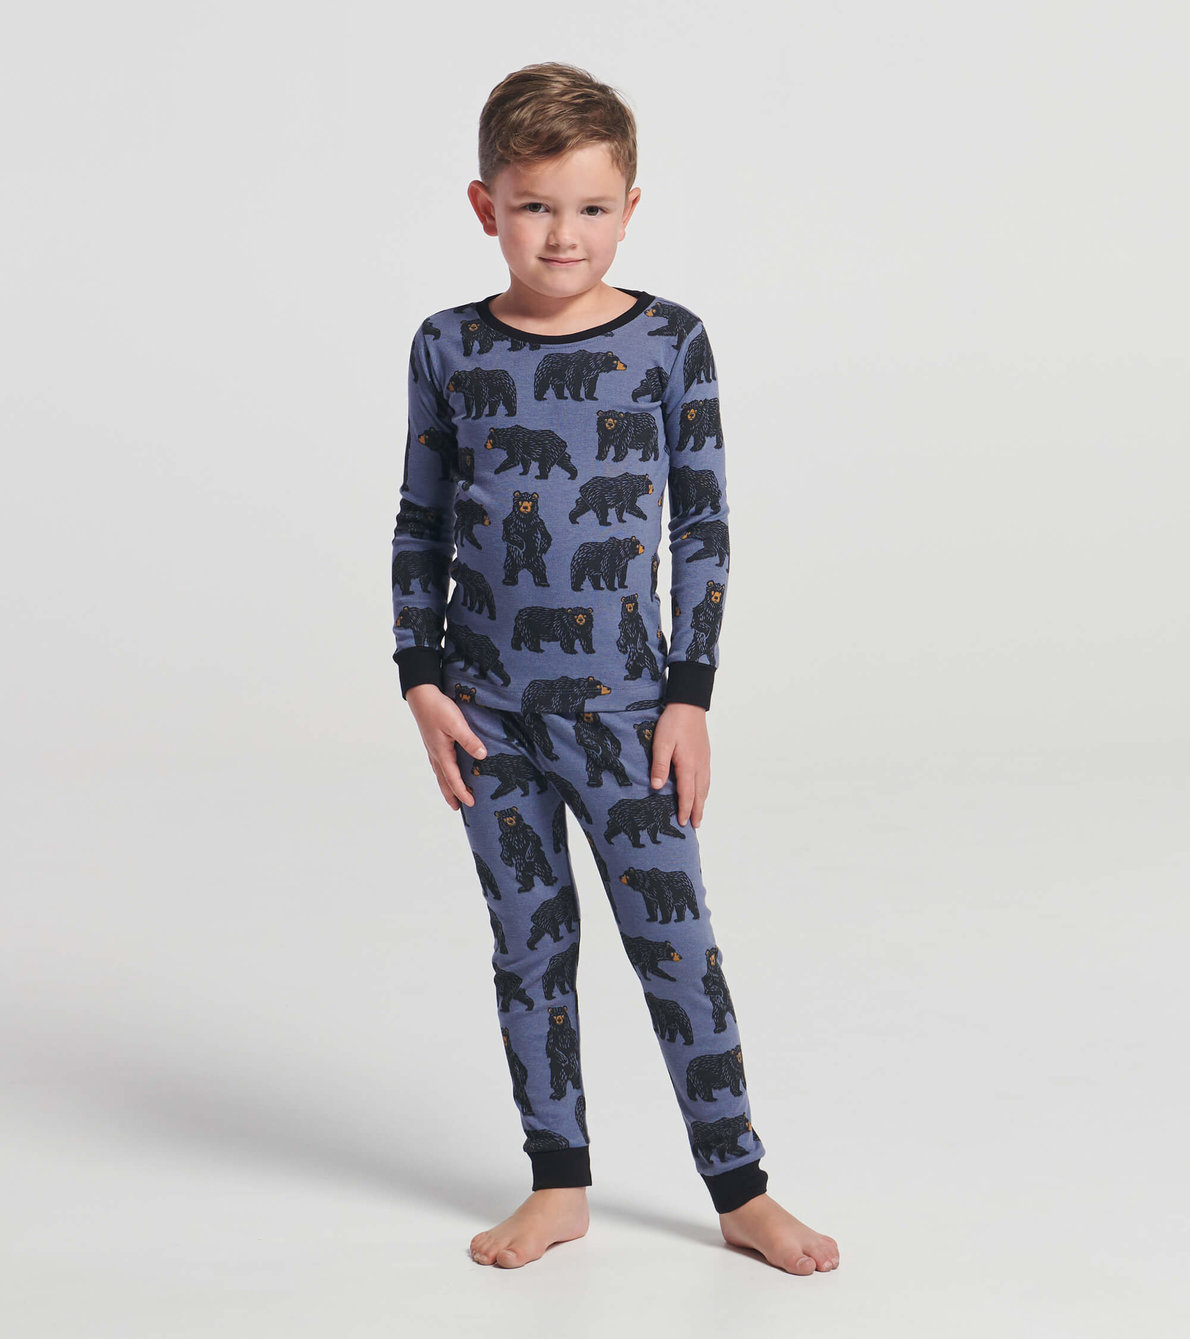 View larger image of Wild Bears Kids Pajama Set